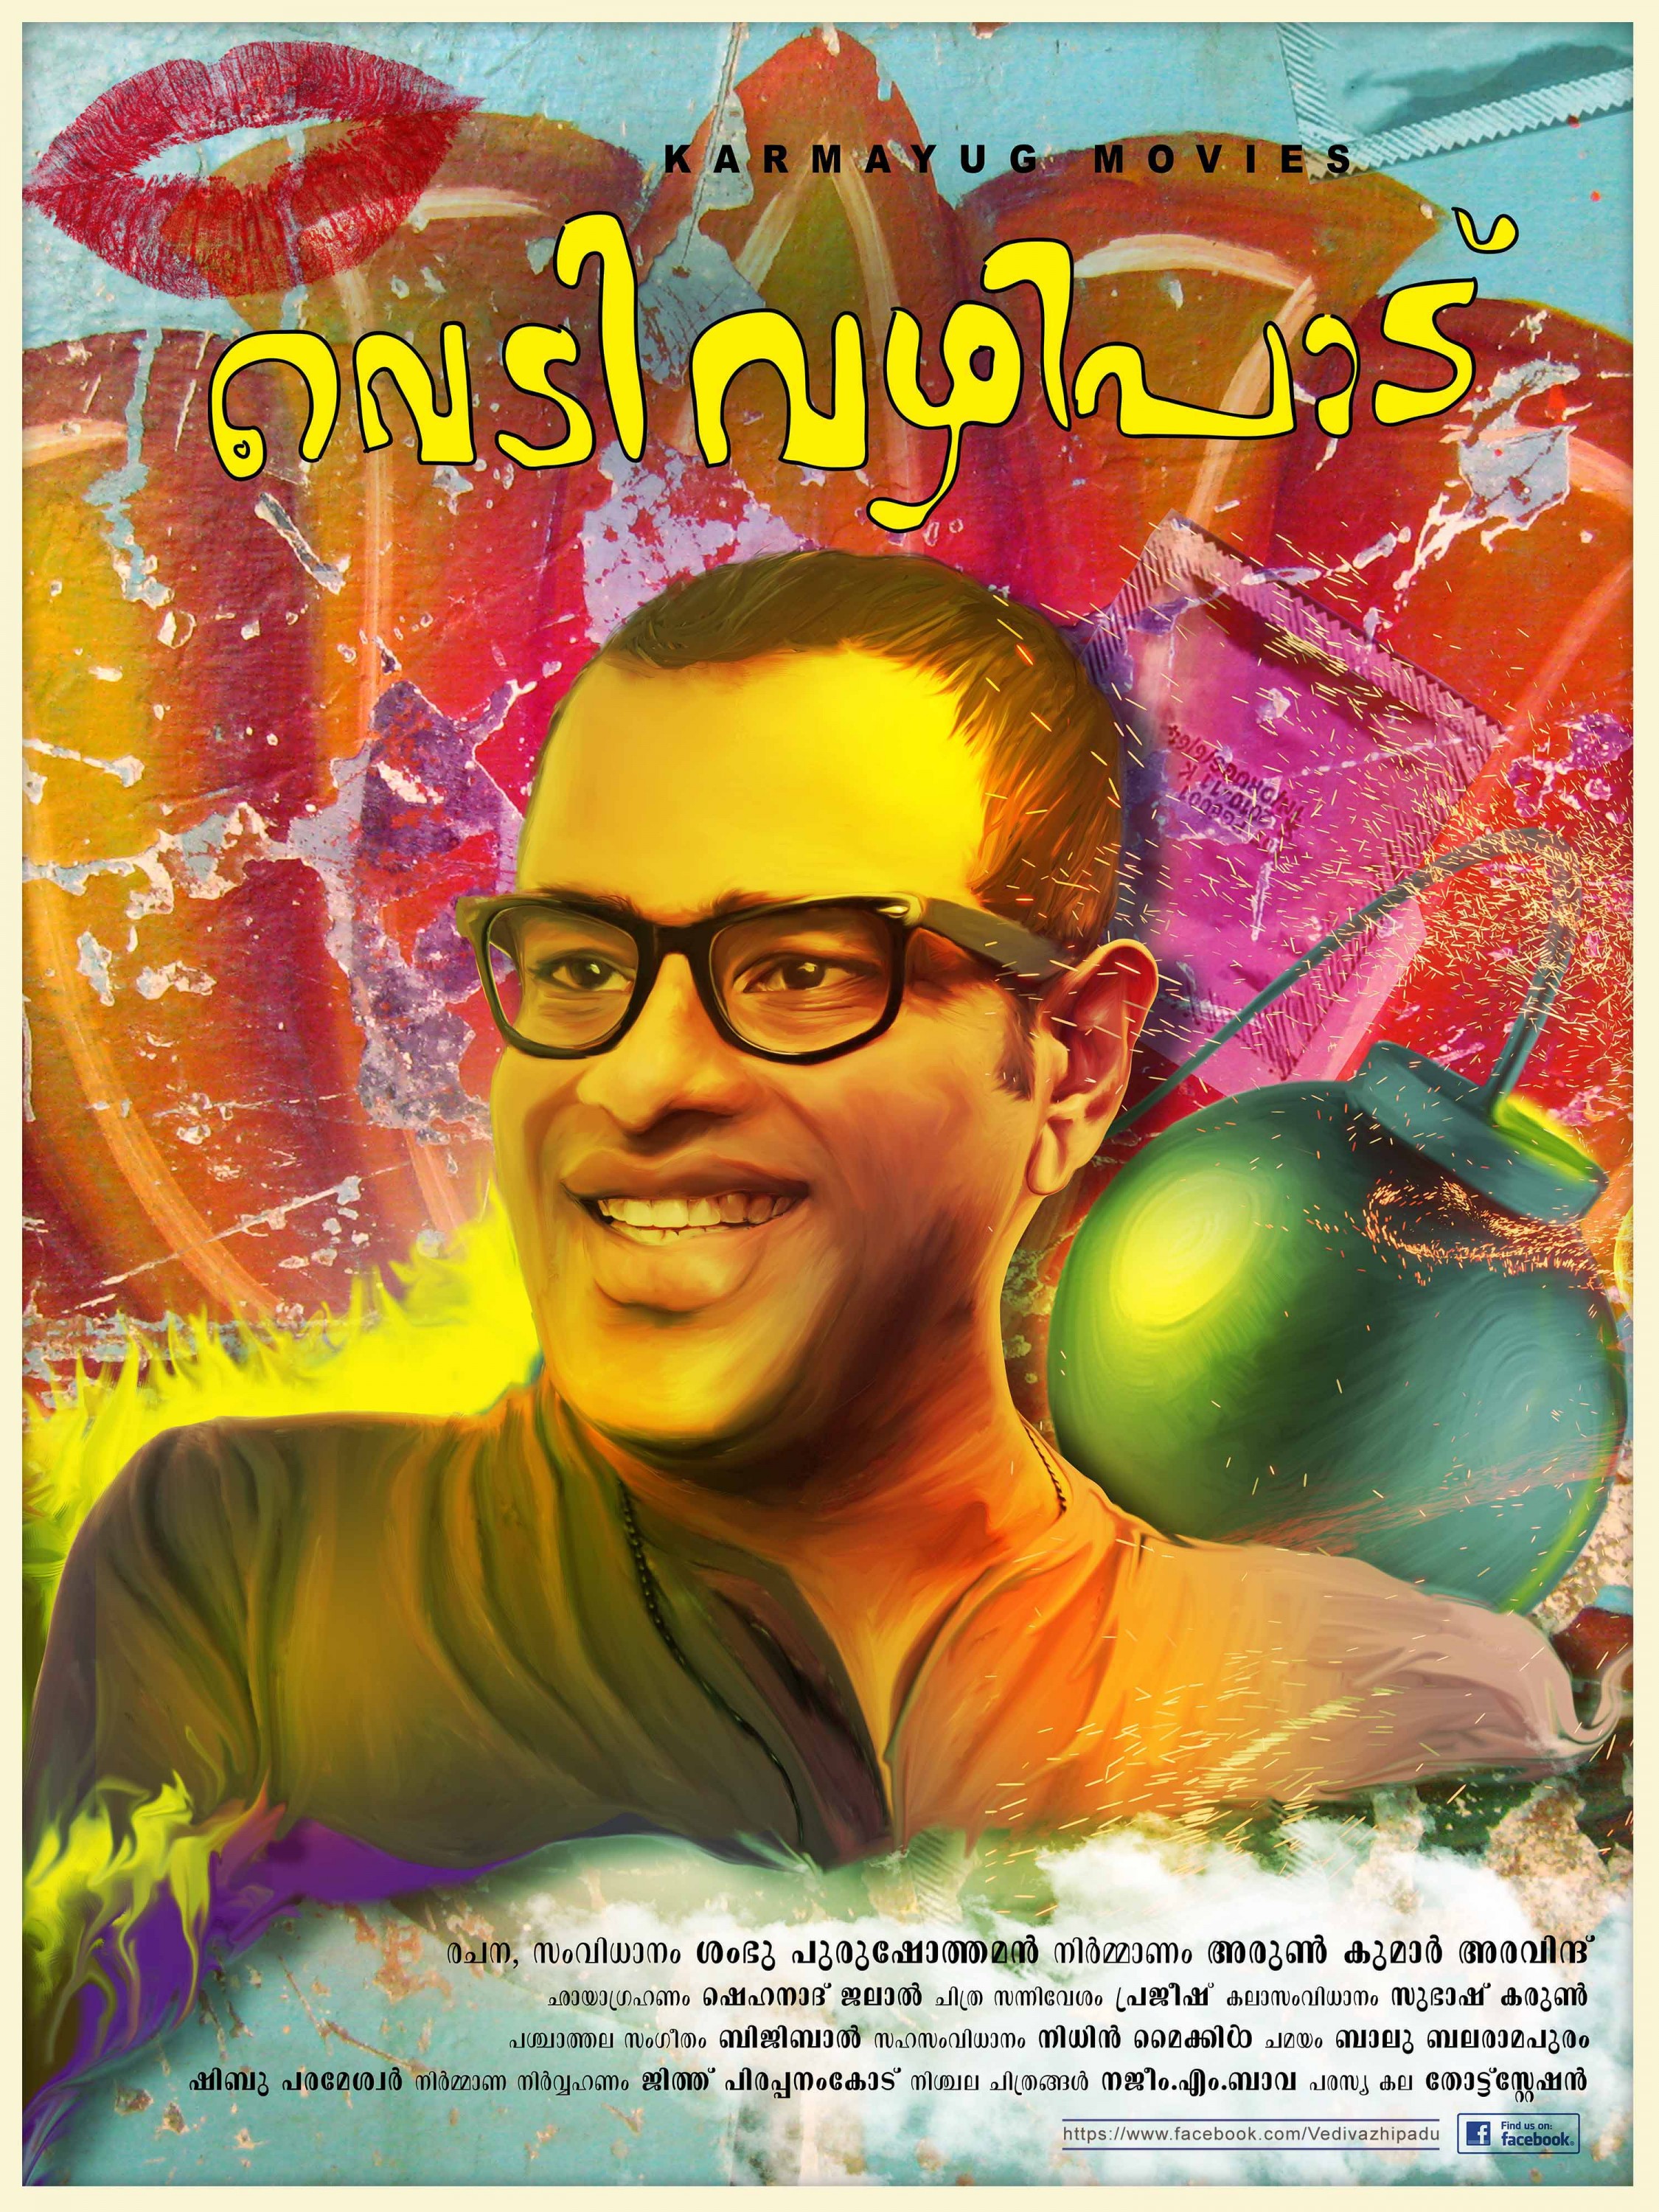 Mega Sized Movie Poster Image for Vedivazhipadu (#6 of 13)